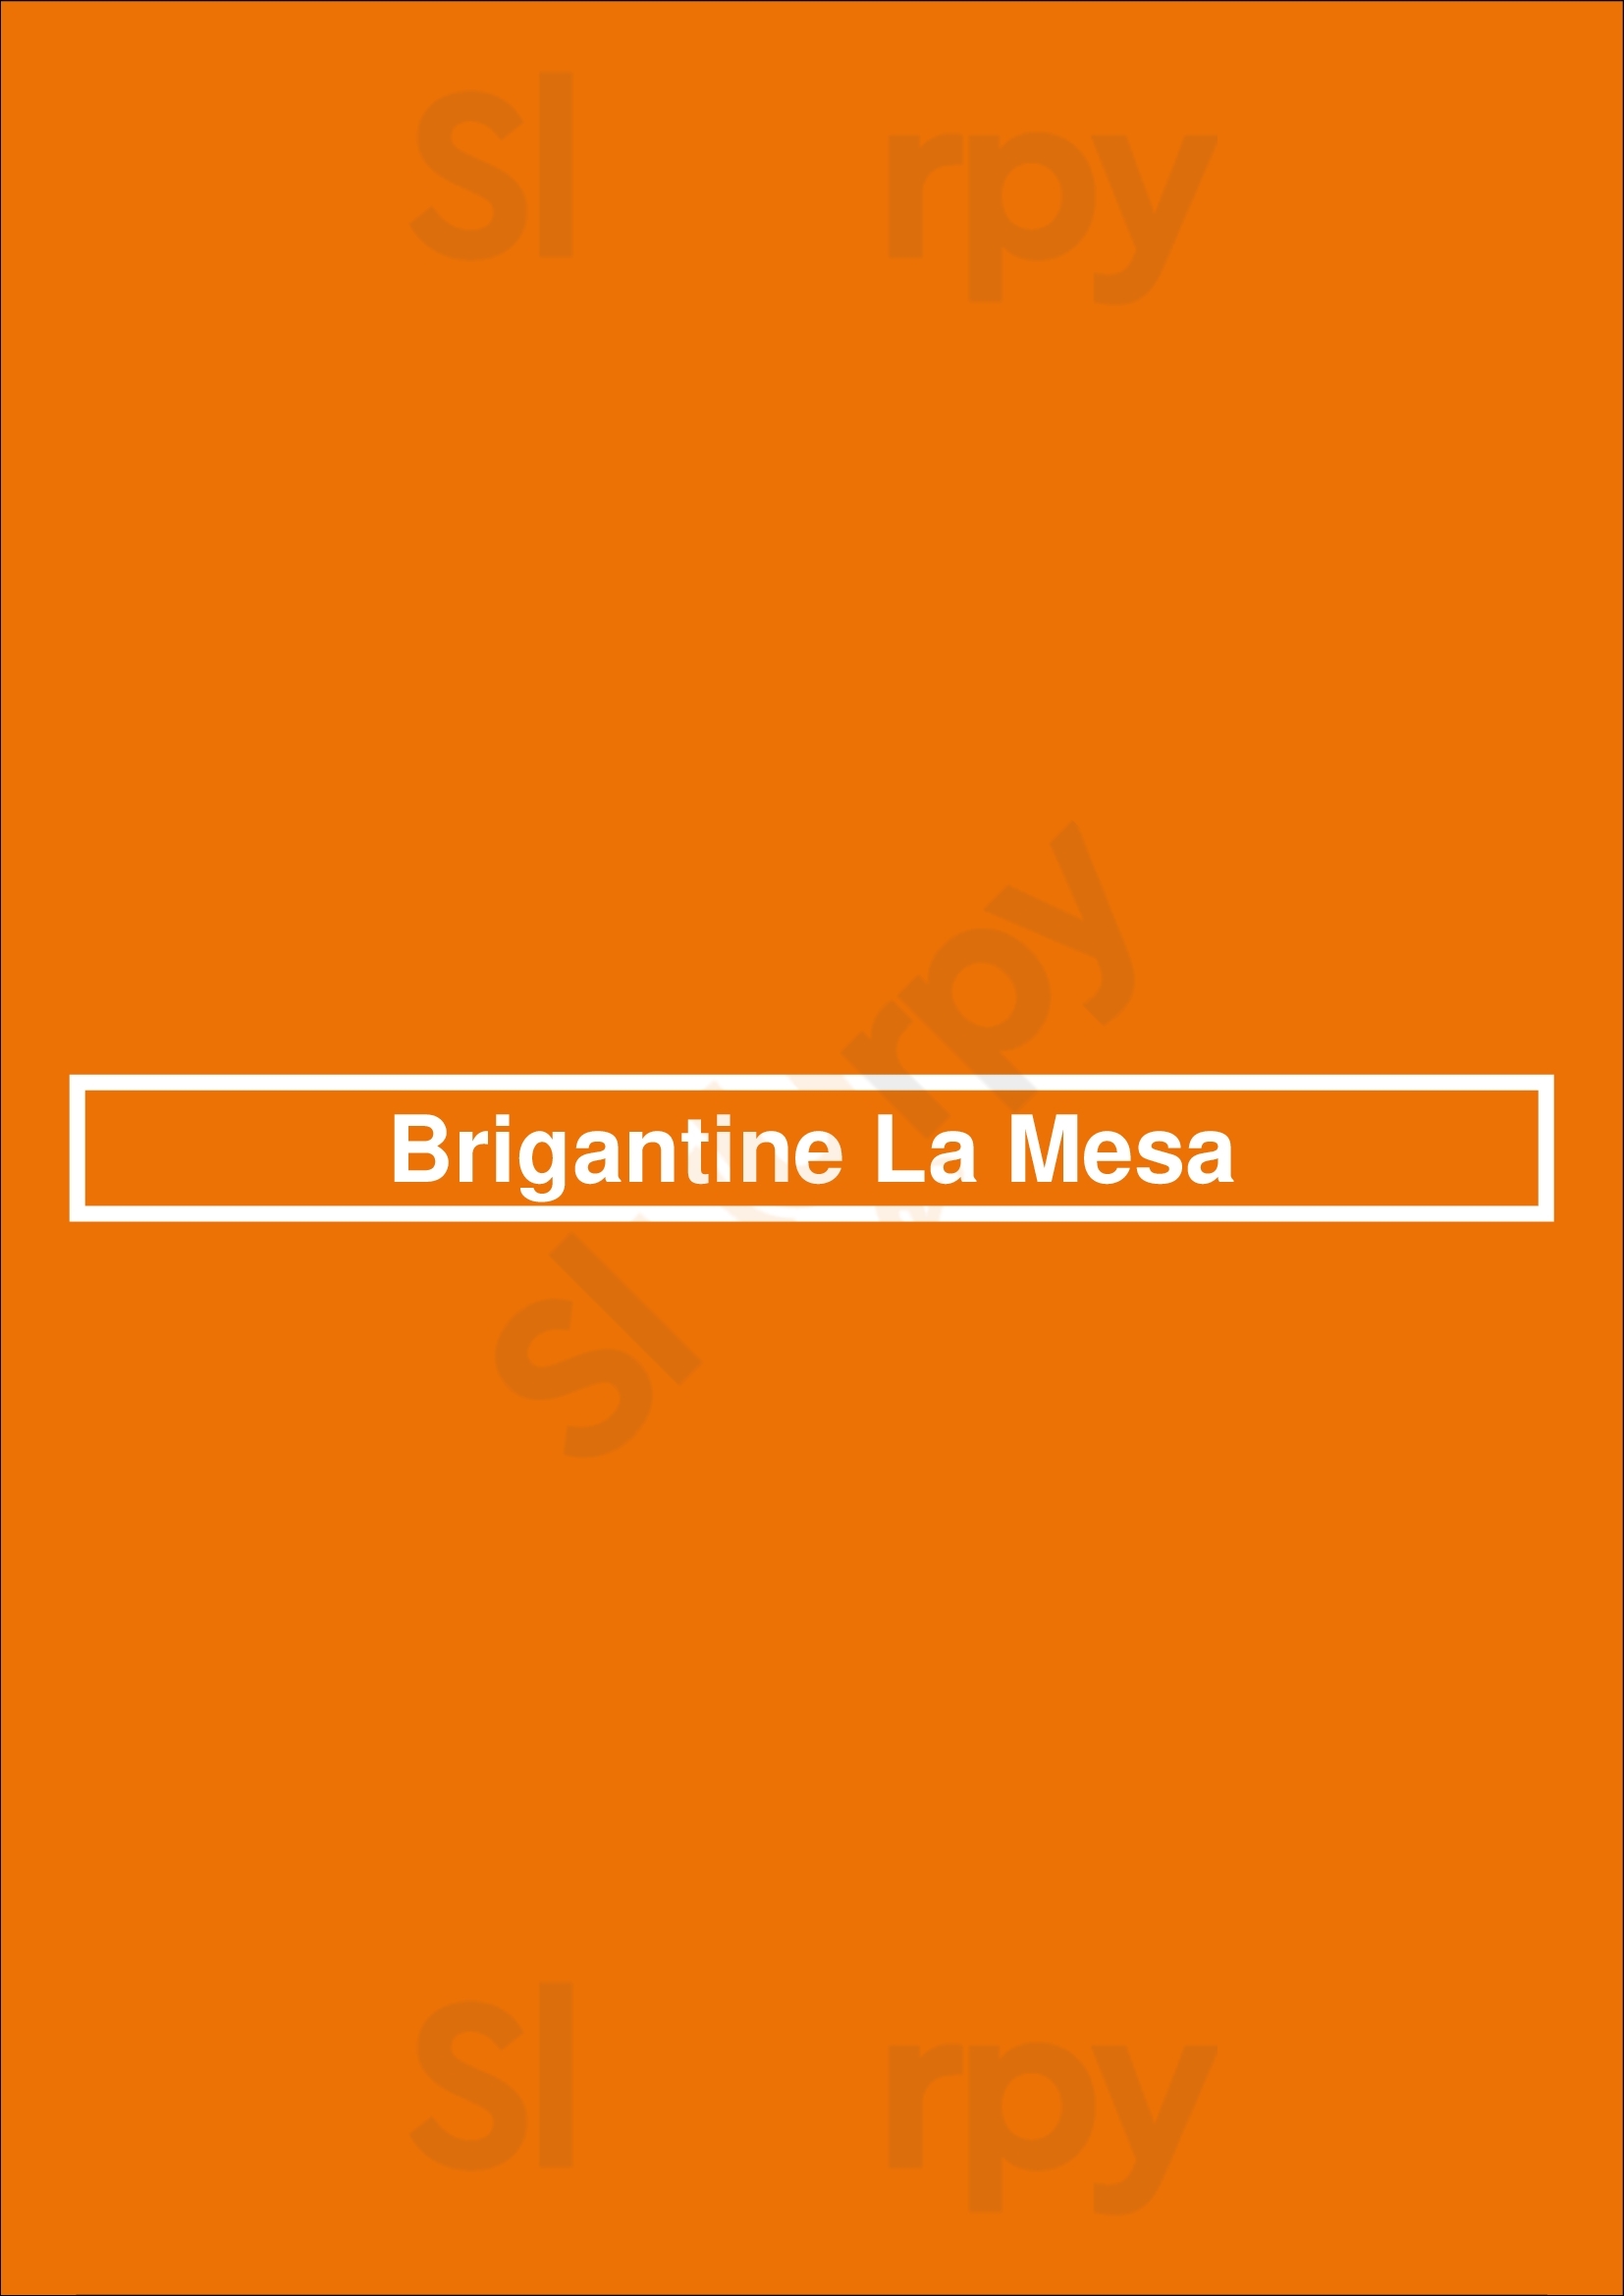 Brigantine La Mesa La Mesa Menu - 1